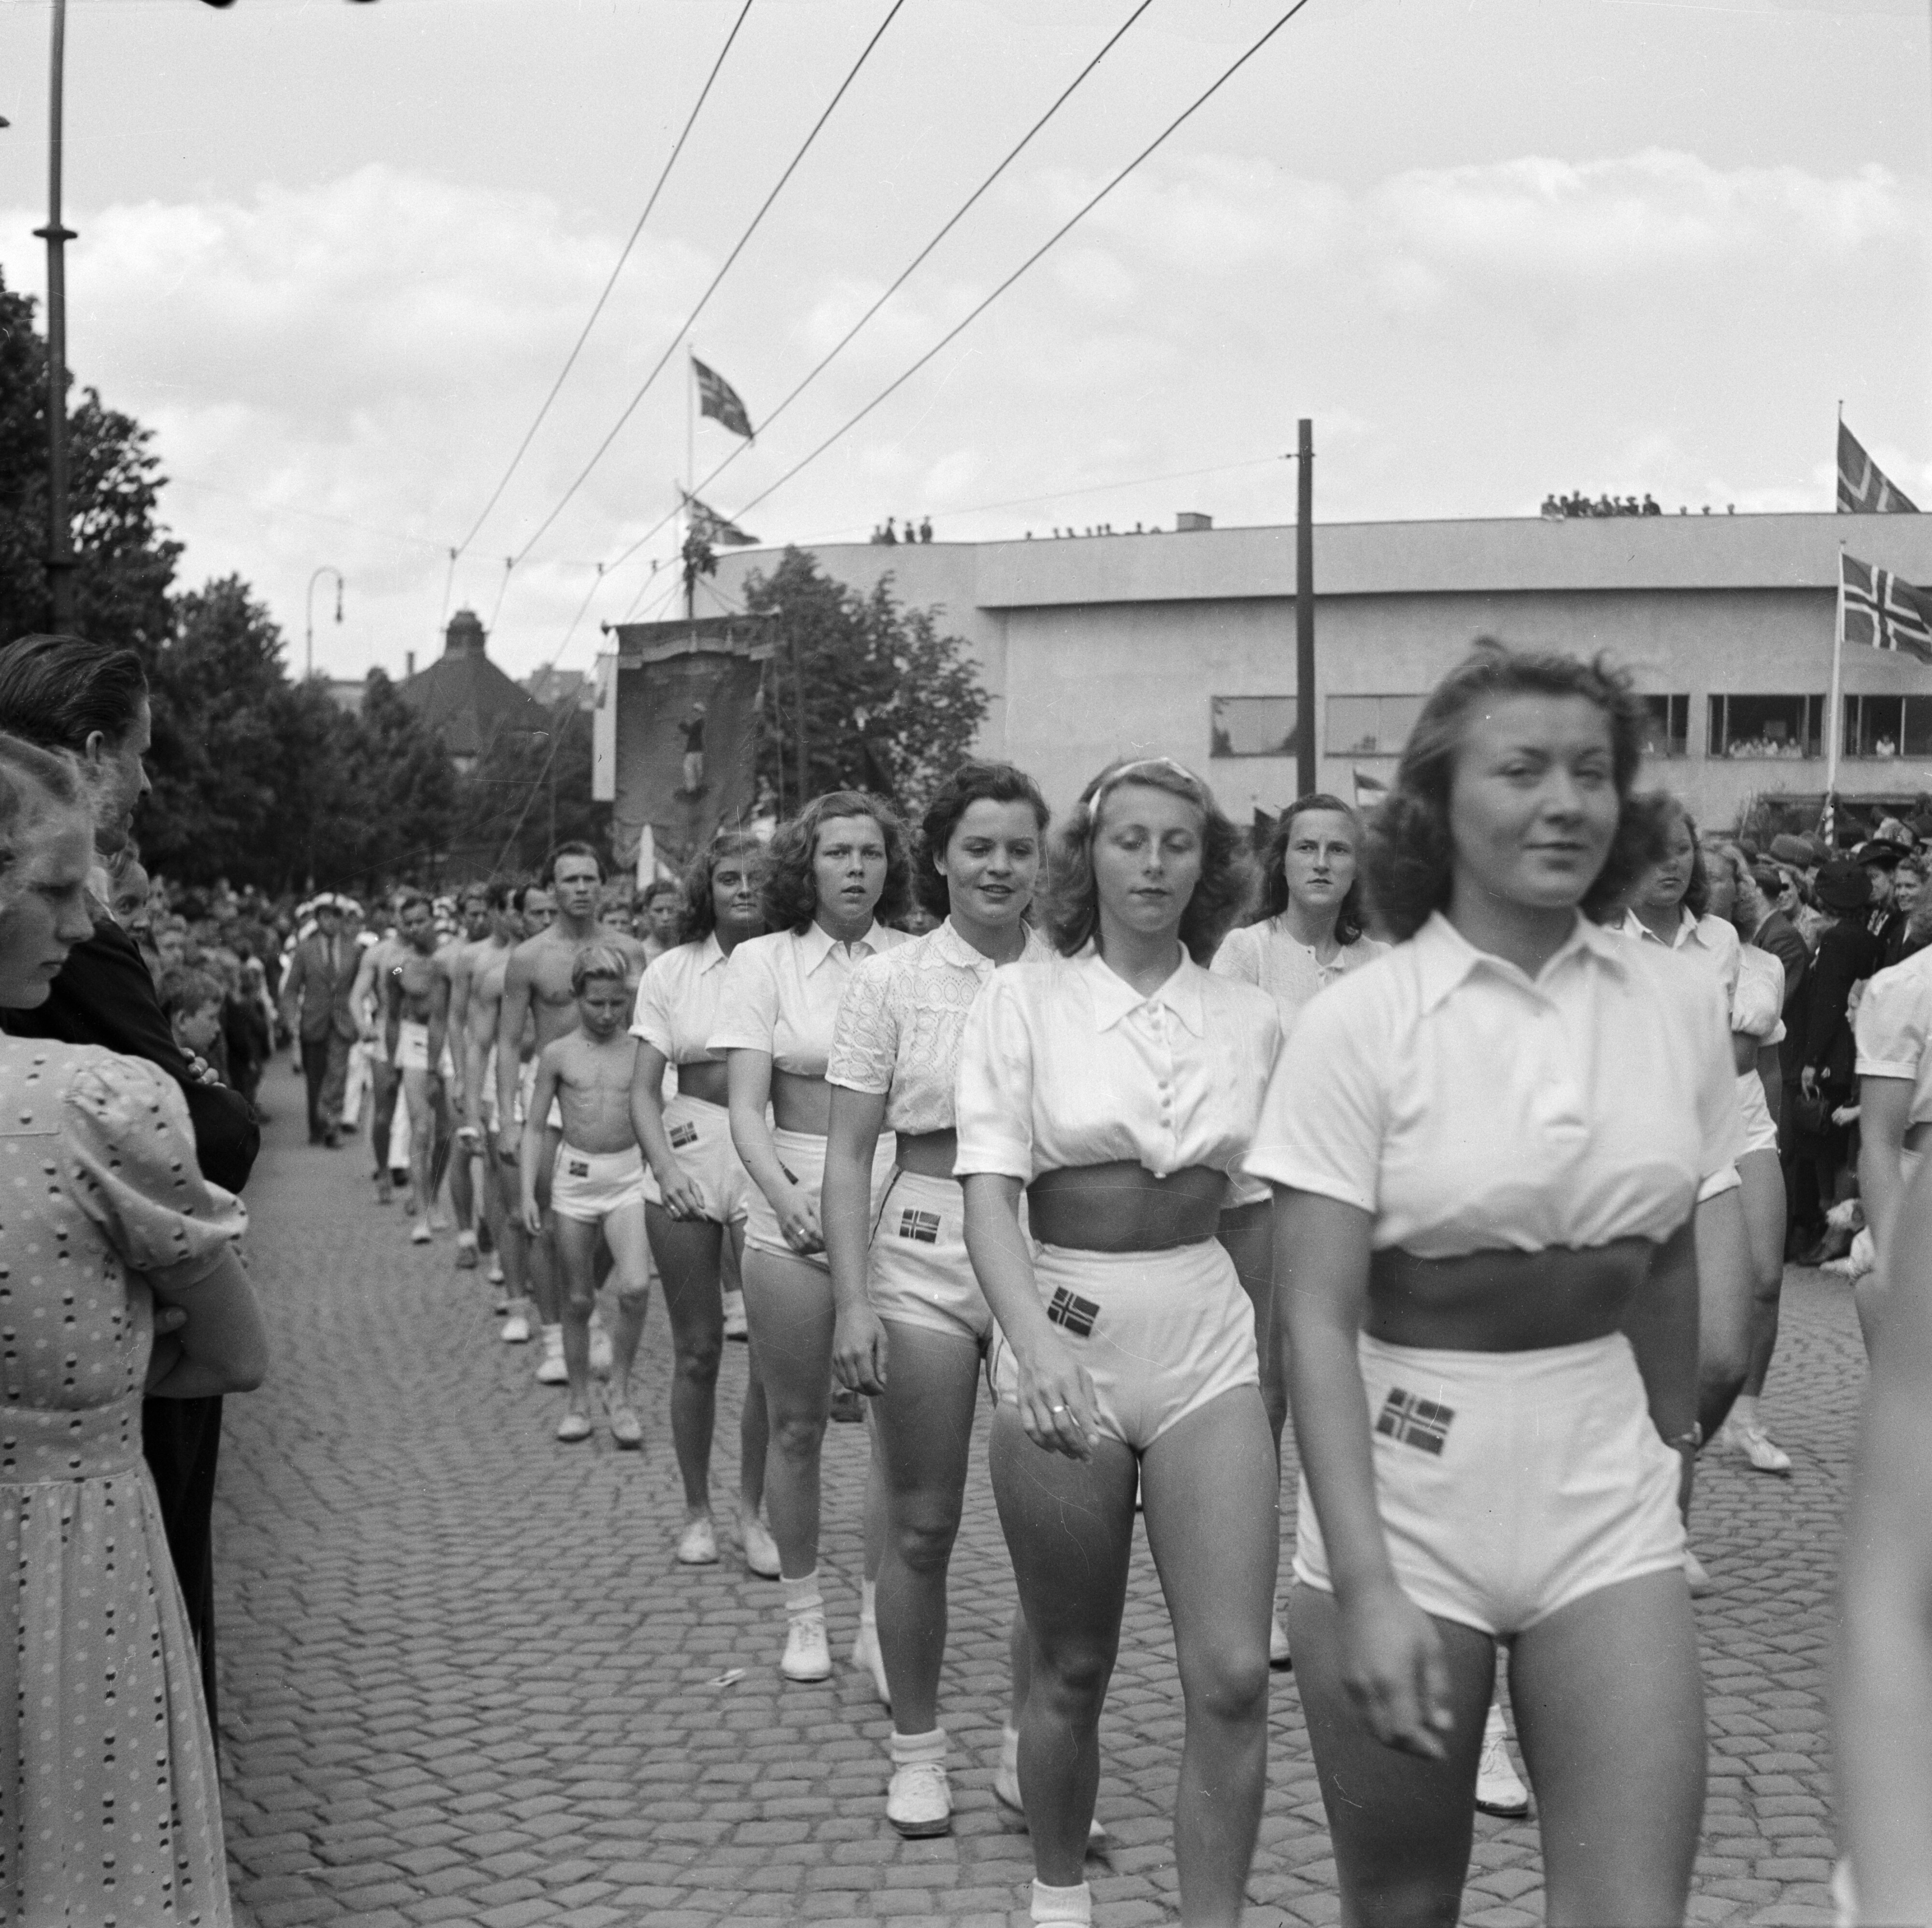 Парад на мультиспортивном стадионе «Бислетт» в городе Осло, Норвегия, 3 июня 1945 года. Фотограф Рольф А. Стрём